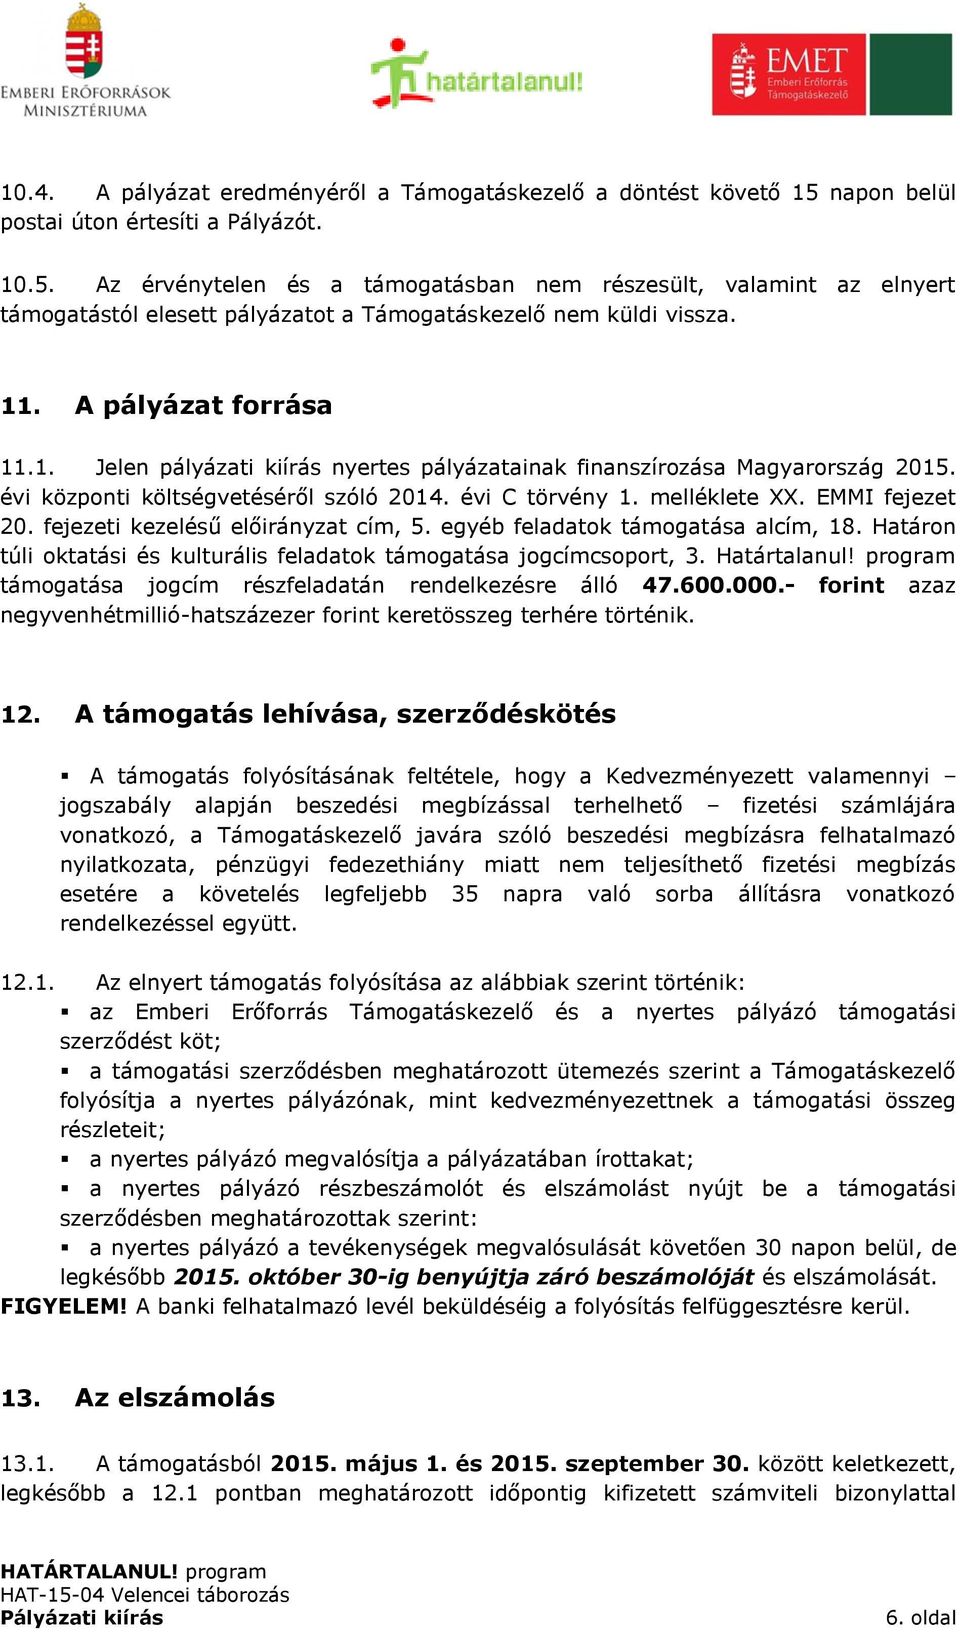 A pályázat forrása 11.1. Jelen pályázati kiírás nyertes pályázatainak finanszírozása Magyarország 2015. évi központi költségvetéséről szóló 2014. évi C törvény 1. melléklete XX. EMMI fejezet 20.